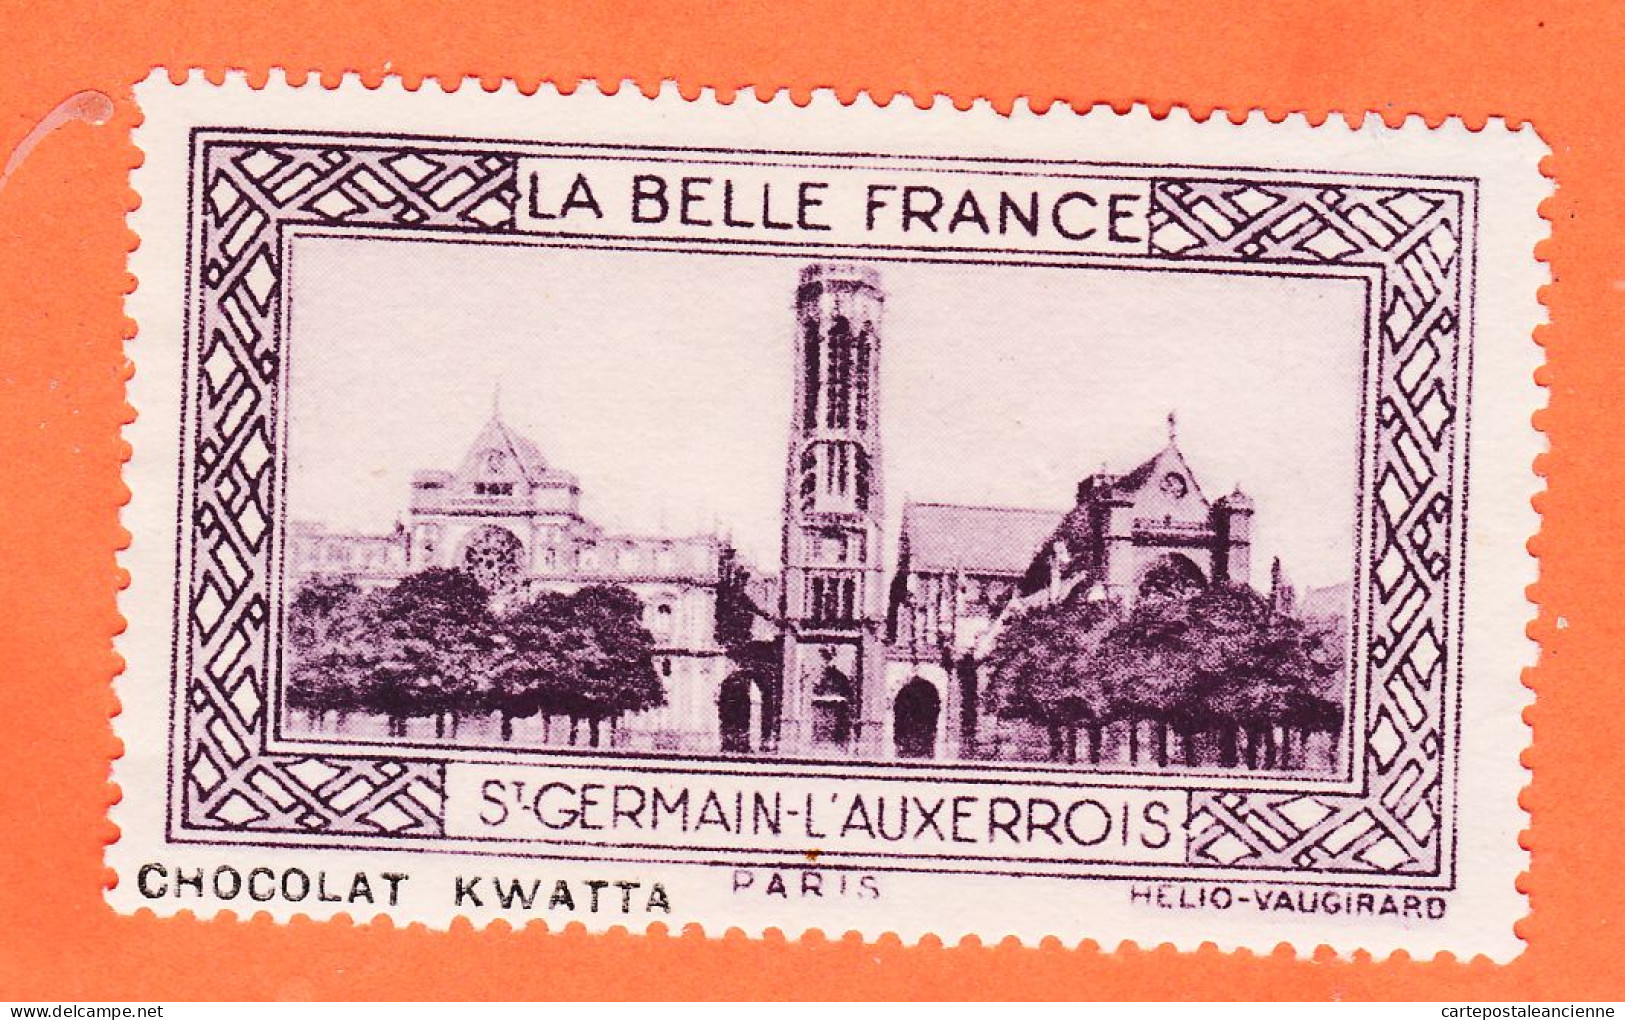 05219 / ⭐ ◉ Eglise SAINT-GERMAIN-AUXERROIS 75-Paris Pub Chocolat KWATTA Vignette Collection BELLE FRANCE HELIO-VAUGIRARD - Tourisme (Vignettes)